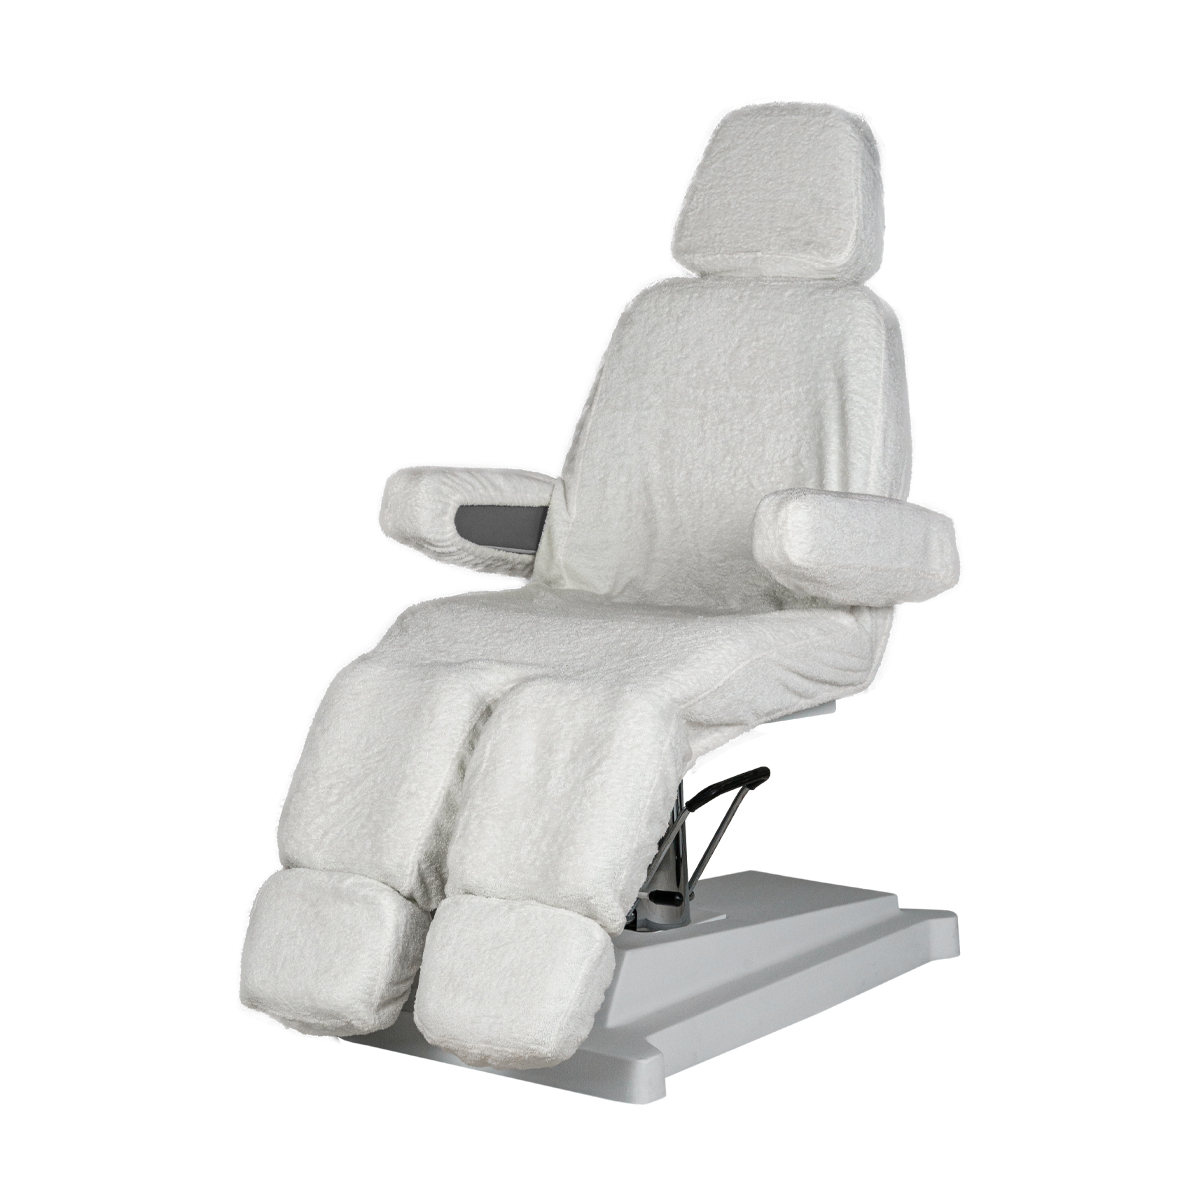 Чехол на педикюрное кресло. Купить по лучшей цене в интернет-магазинеМэдисон